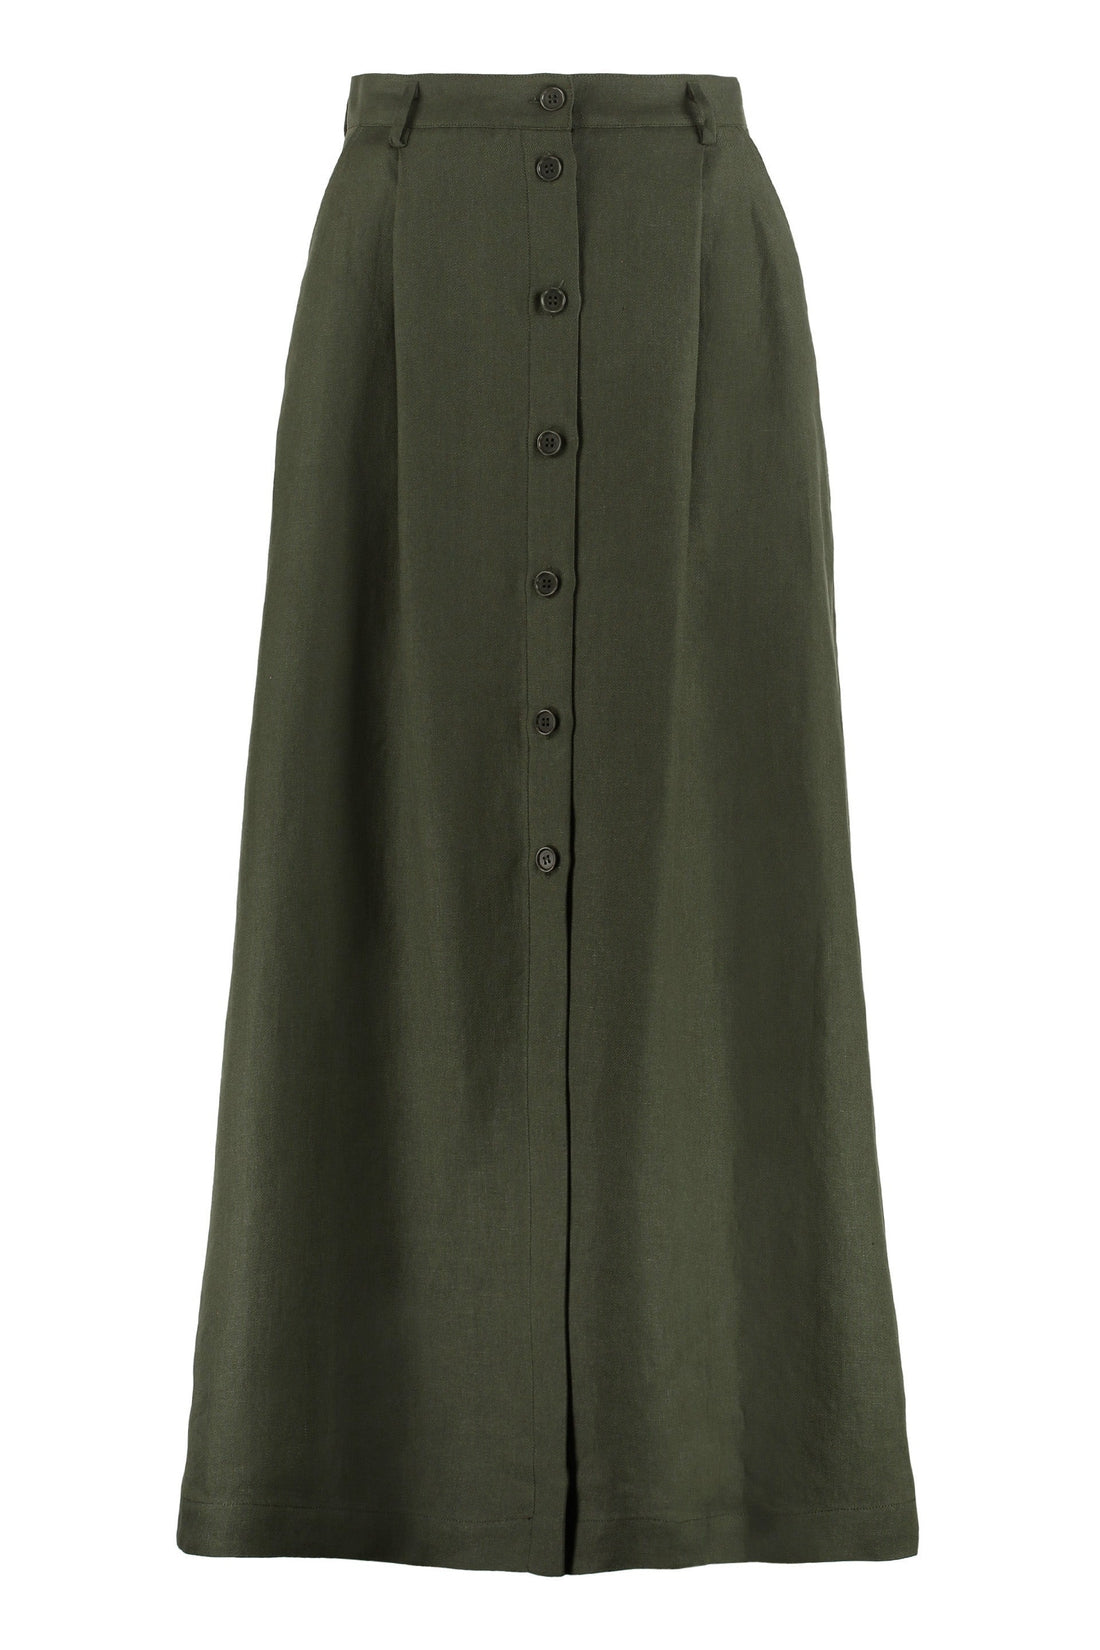 Parosh-OUTLET-SALE-Linen skirt-ARCHIVIST